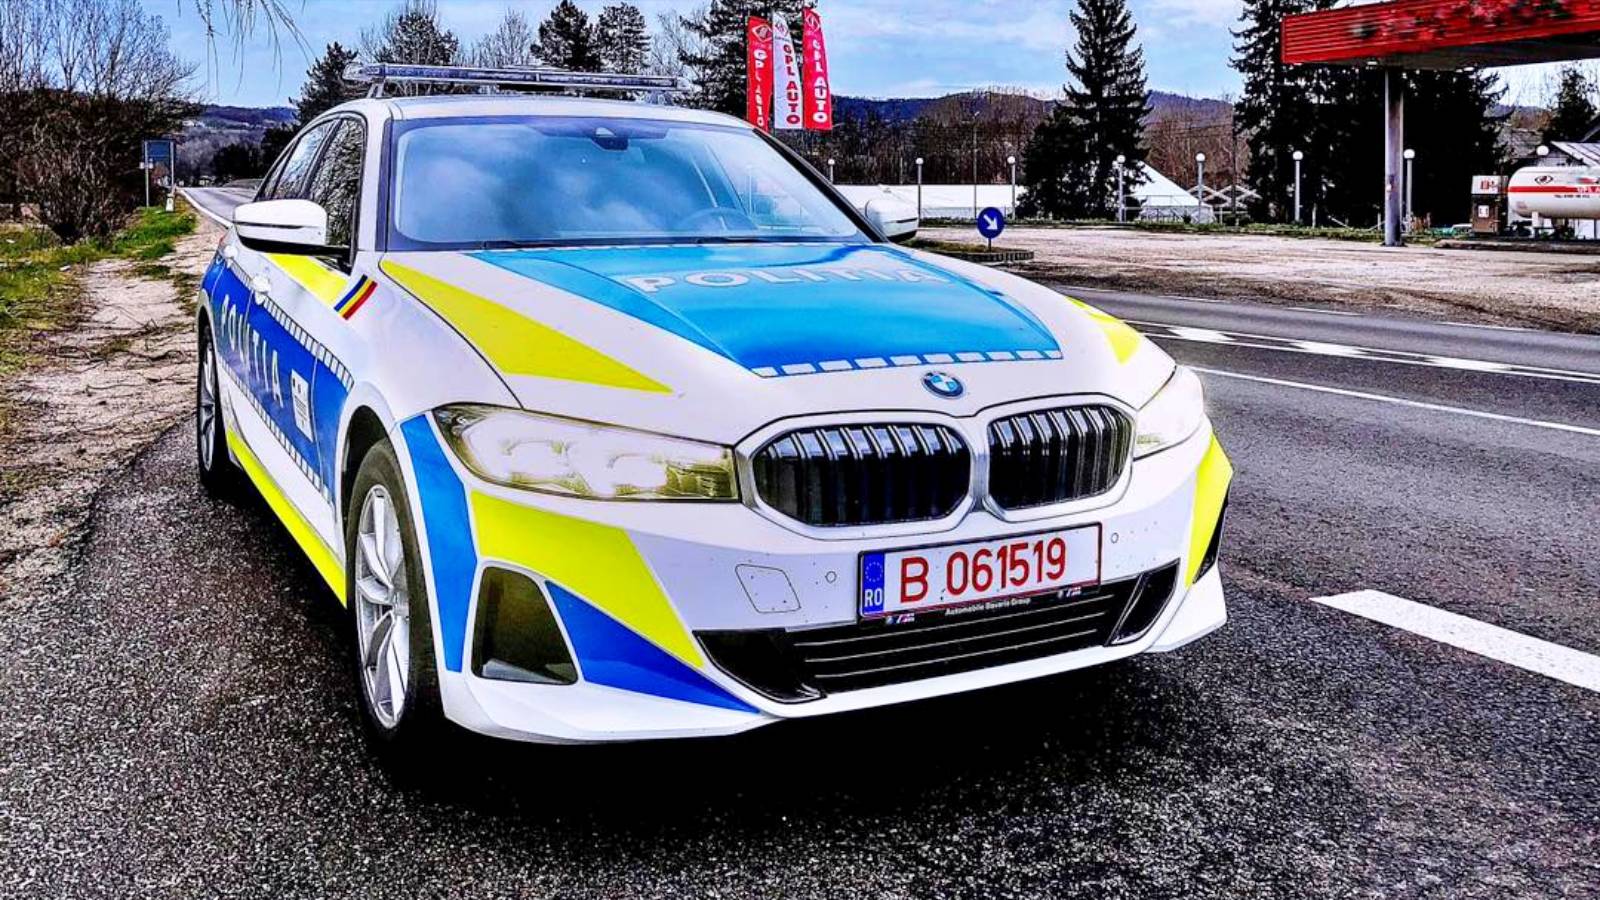 Romanian poliisin varoitus alkoholin tai huumeiden vaikutuksen alaisena ajamisesta